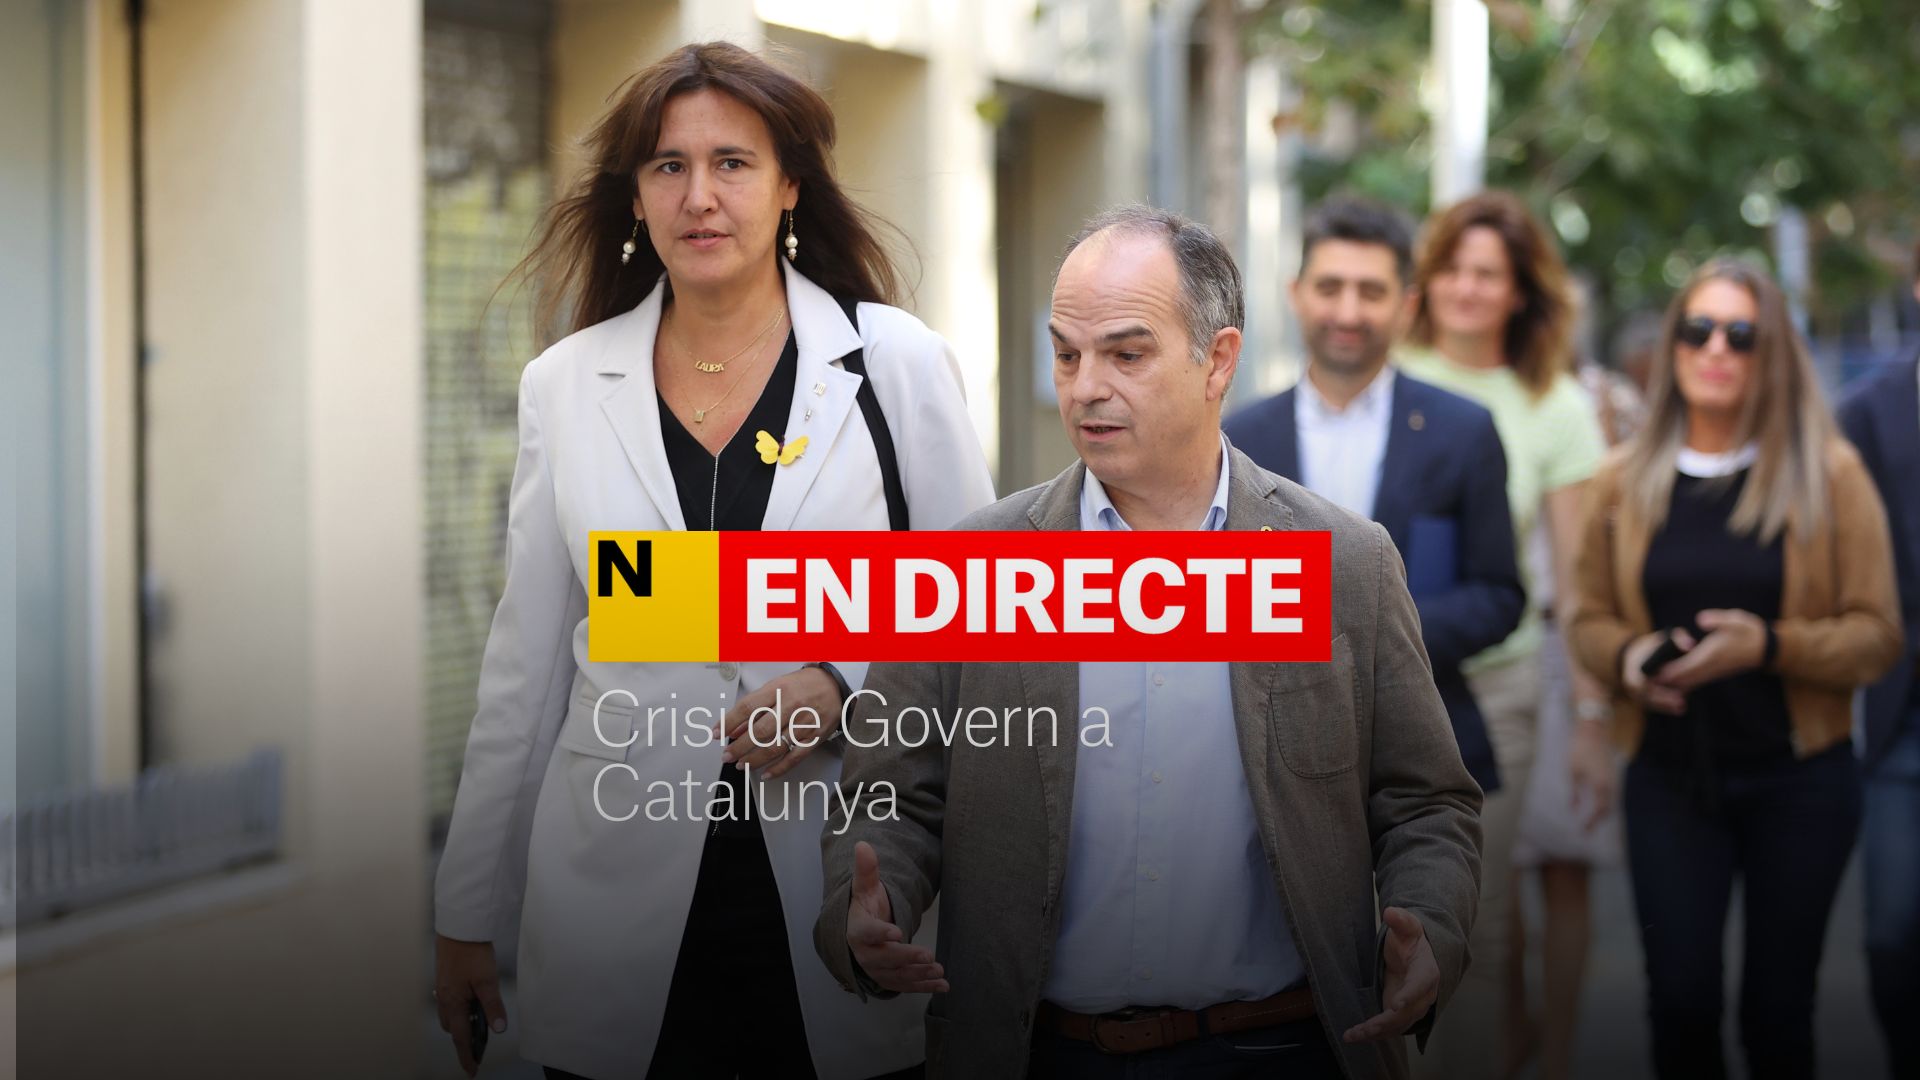 Crisis de Govern en Catalunya, última hora | Junts explica la consulta sobre la continuidad en el Govern